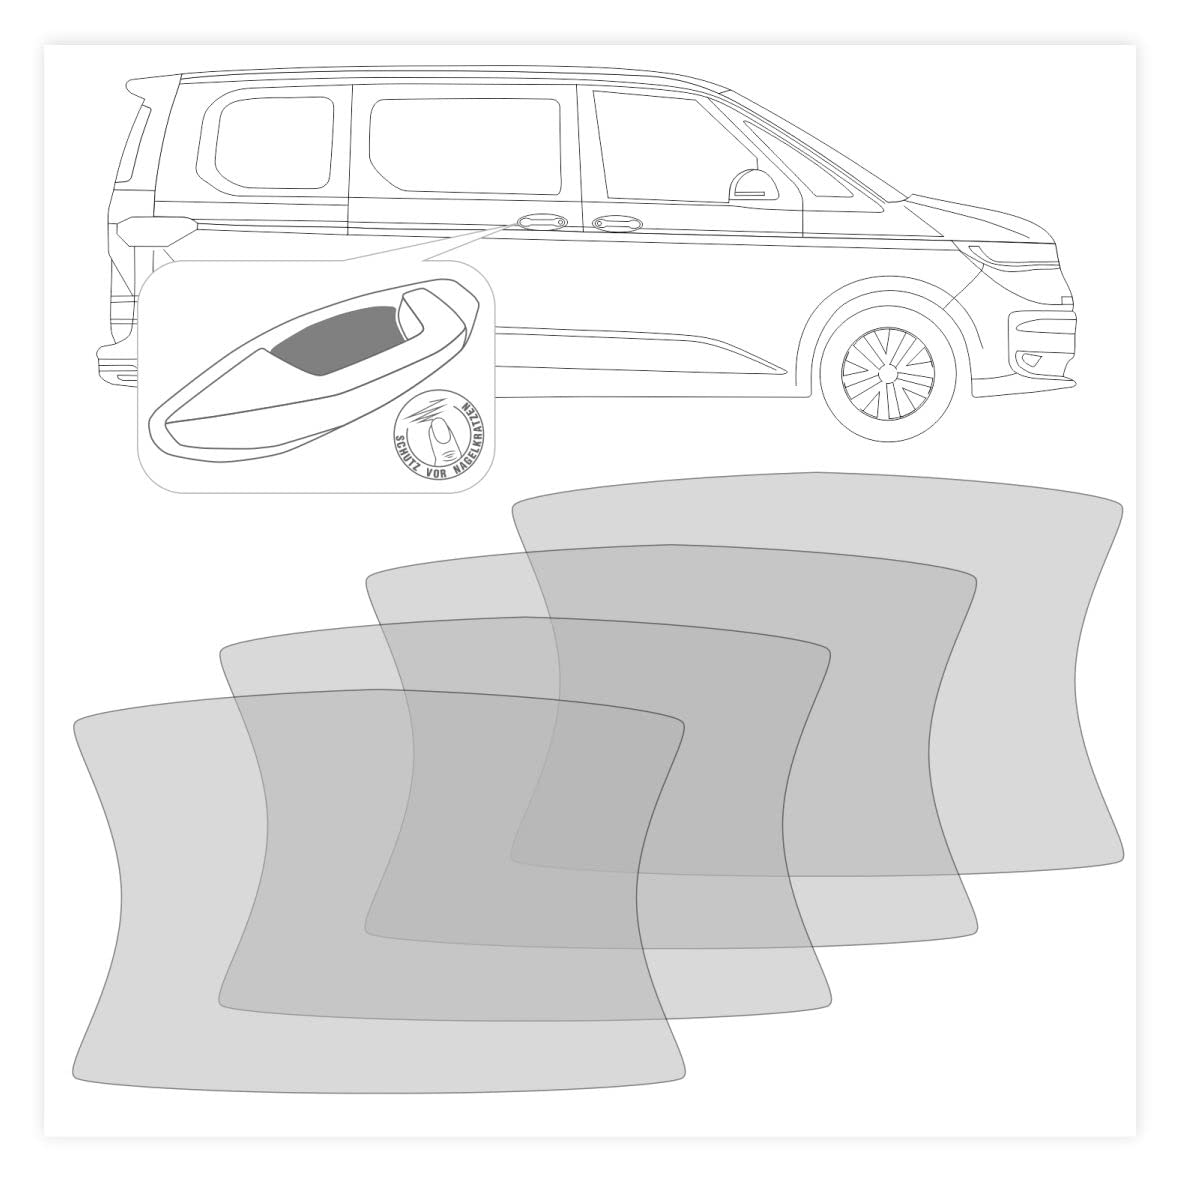 FOTOFOL 4-er Set Griffmulden Schutzfolien - Lackschutzfolien zum Schutz vor Kratzern - transparent passend für VW T7 Multivan von FOTOFOL